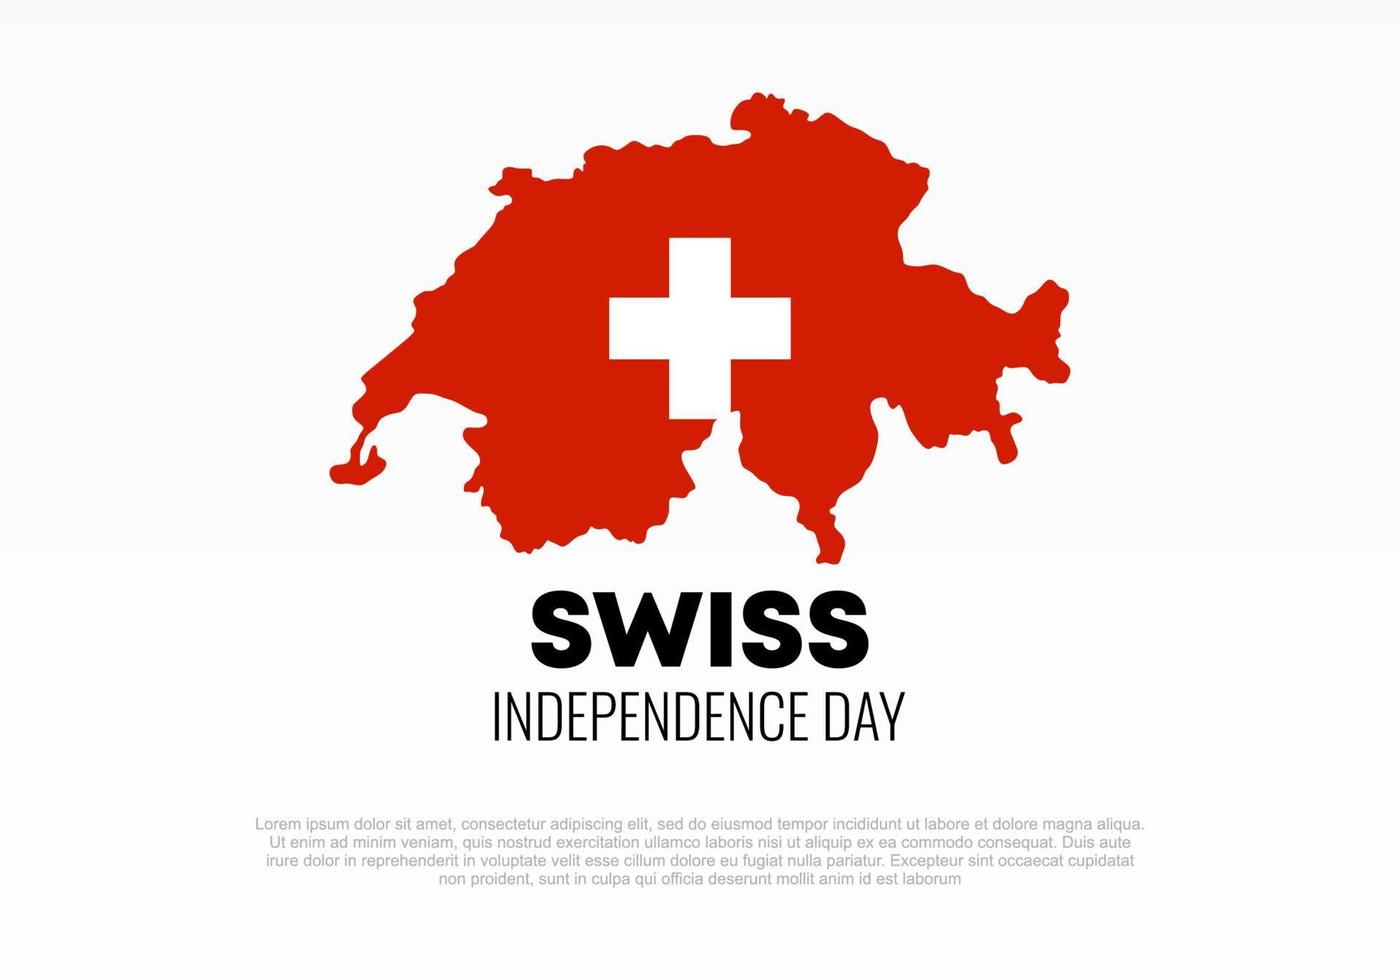 fond de la fête de l'indépendance suisse pour la célébration nationale le 1er août vecteur